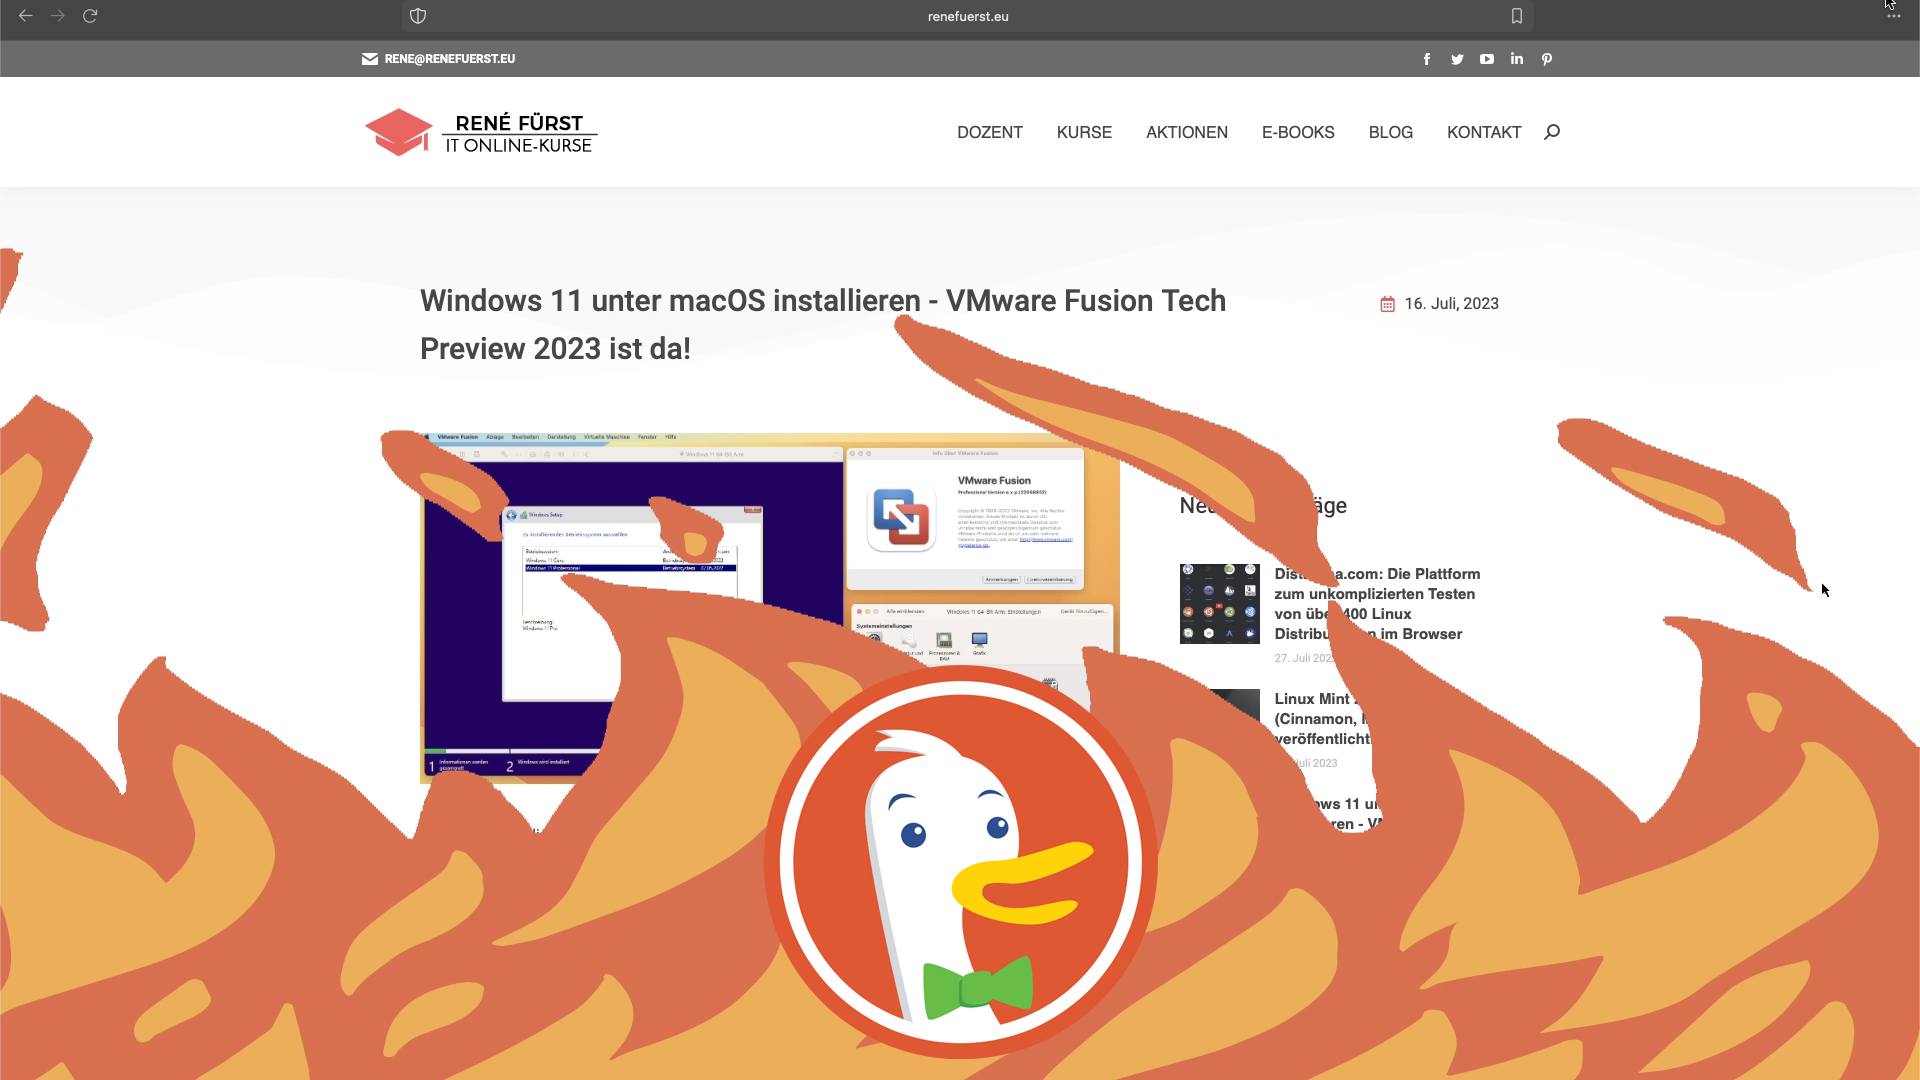 Vergleich: Chrome im Hintergrund, Feuer mit DuckDuckGo-Logo im Vordergrund - Beitrag: Von Chrome zum DuckDuckGo Private Browser: Der Weg zu mehr Privatsphäre im Internet